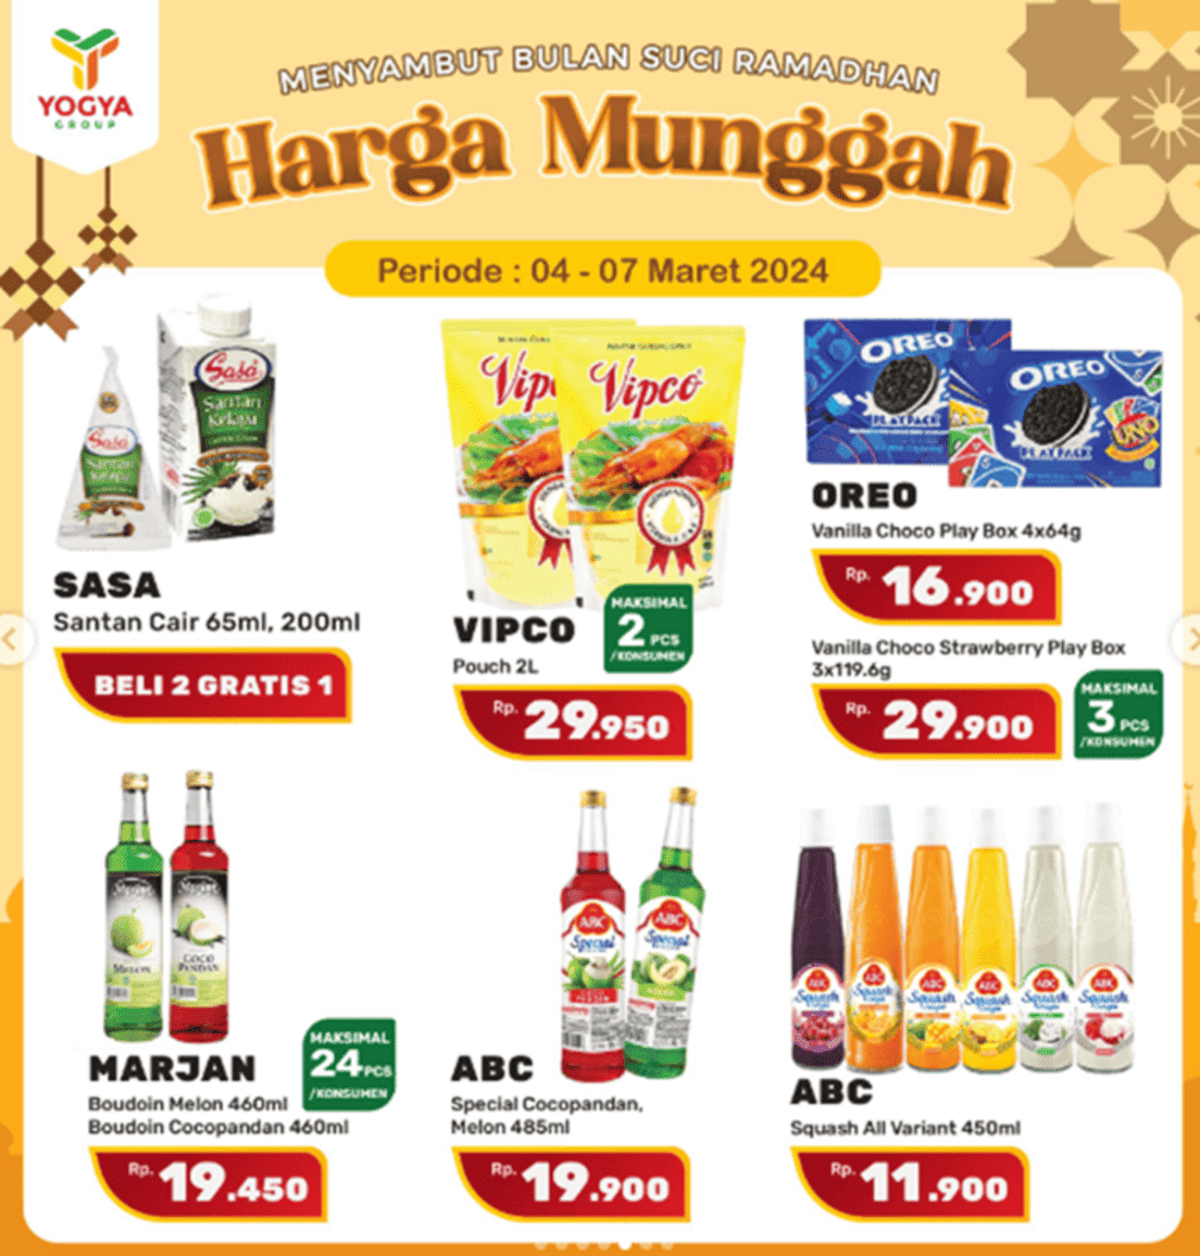 Beragam produk makanan dan minuman disajikan dalam Promo Harga Munggah Yogya mulai 04-07 Maret 2024.  